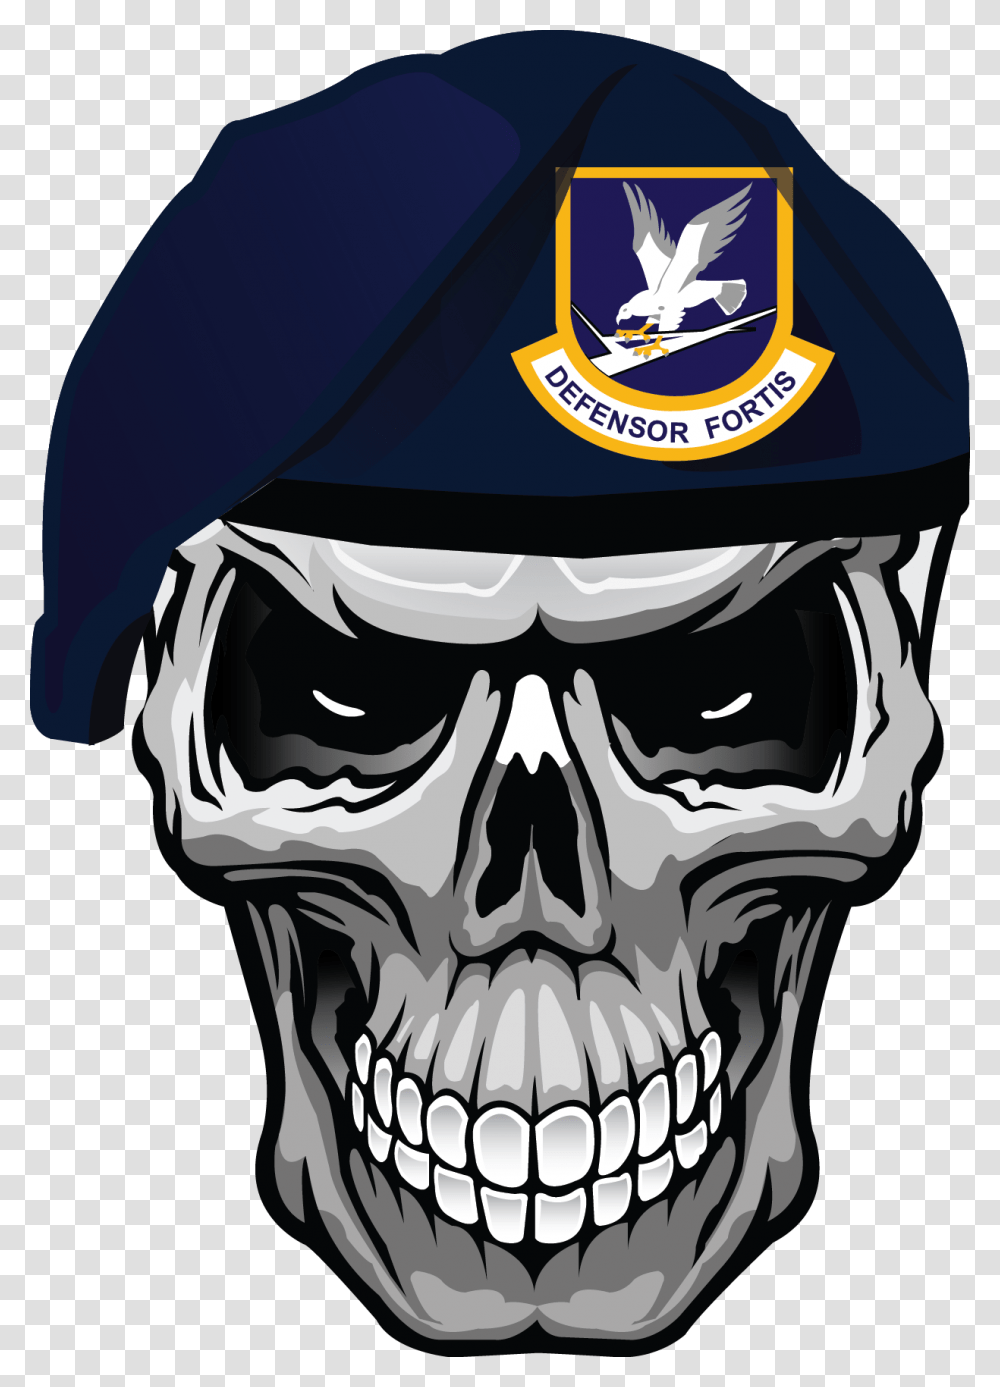 Clip Art Caveira Tattoo Security Forces Skull Beret, Apparel, Helmet, Head Transparent Png